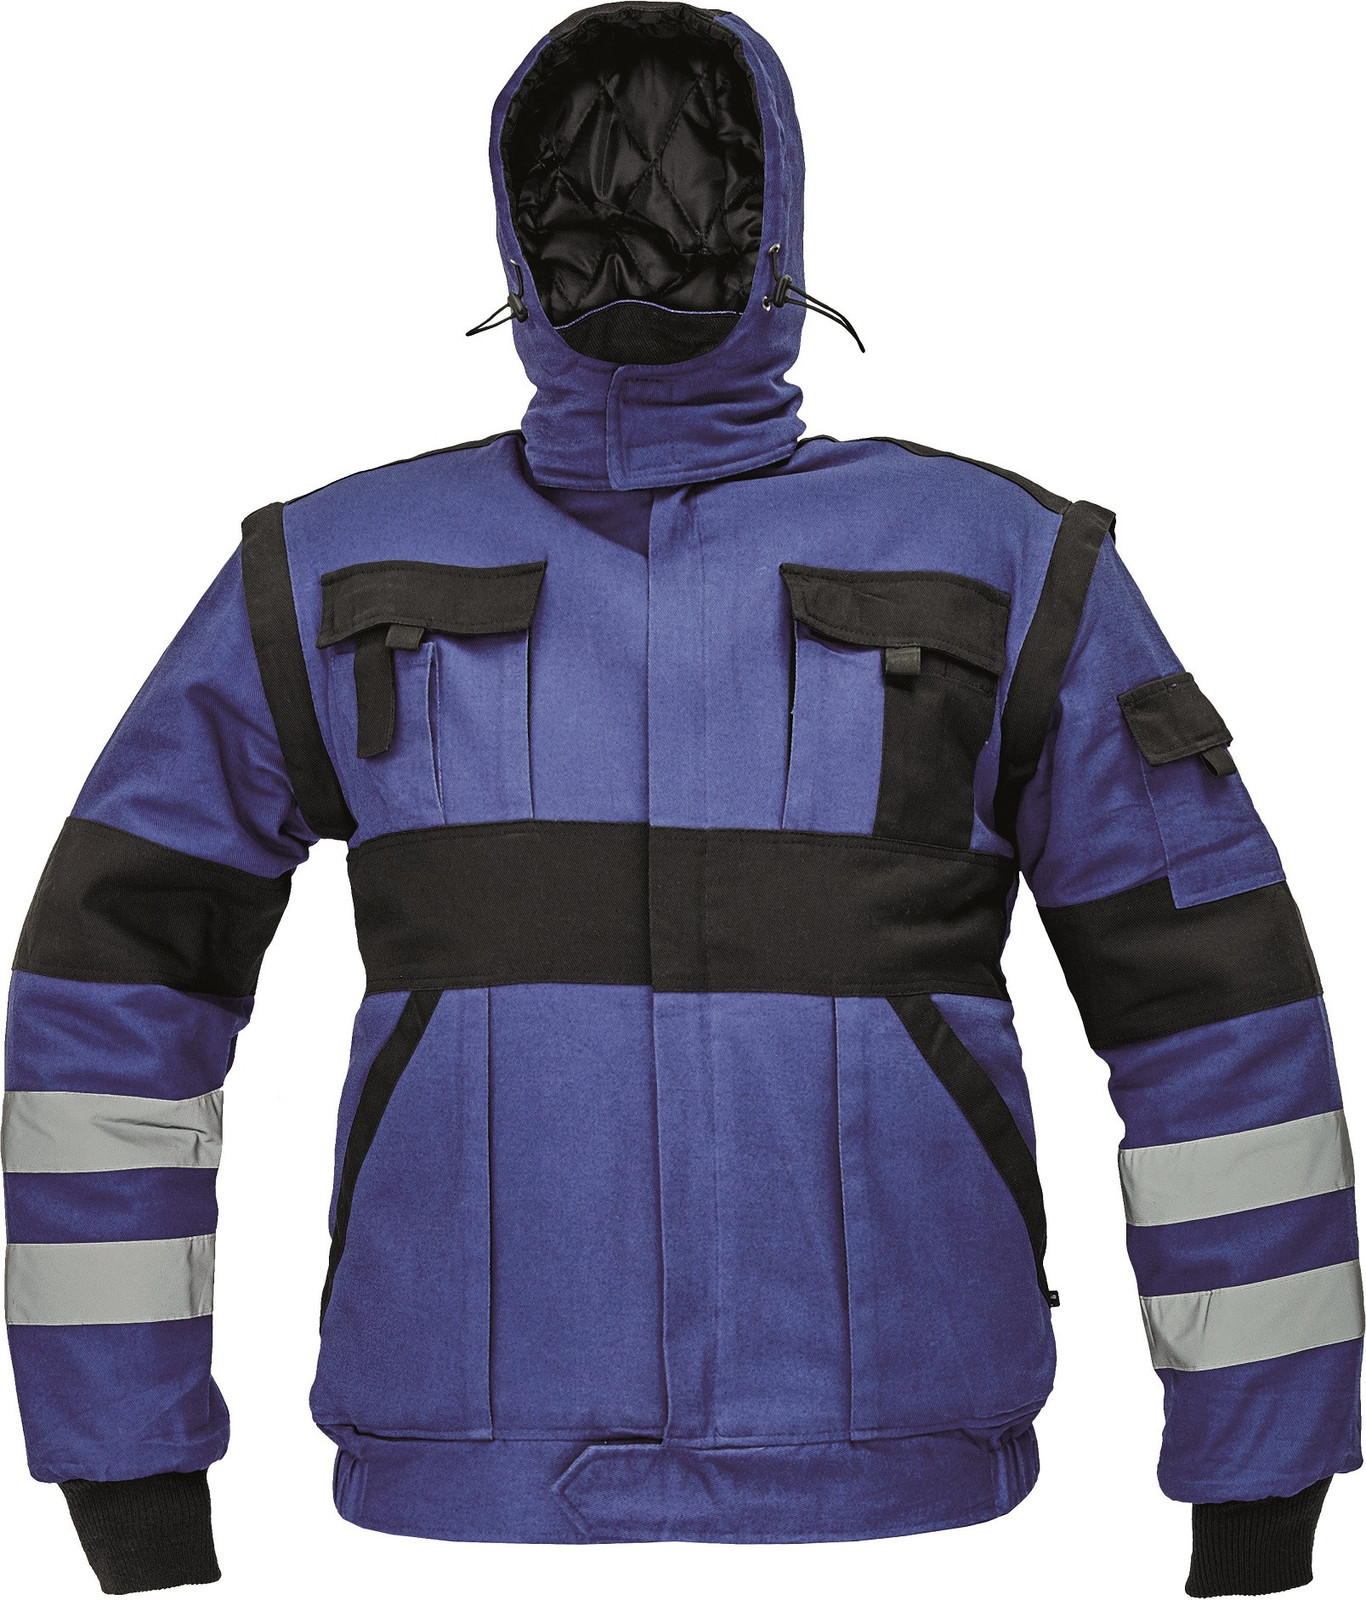 Zateplená montérková bunda Max Winter s reflexnými pruhmi 2v1 - veľkosť: 46, farba: modrá/čierna